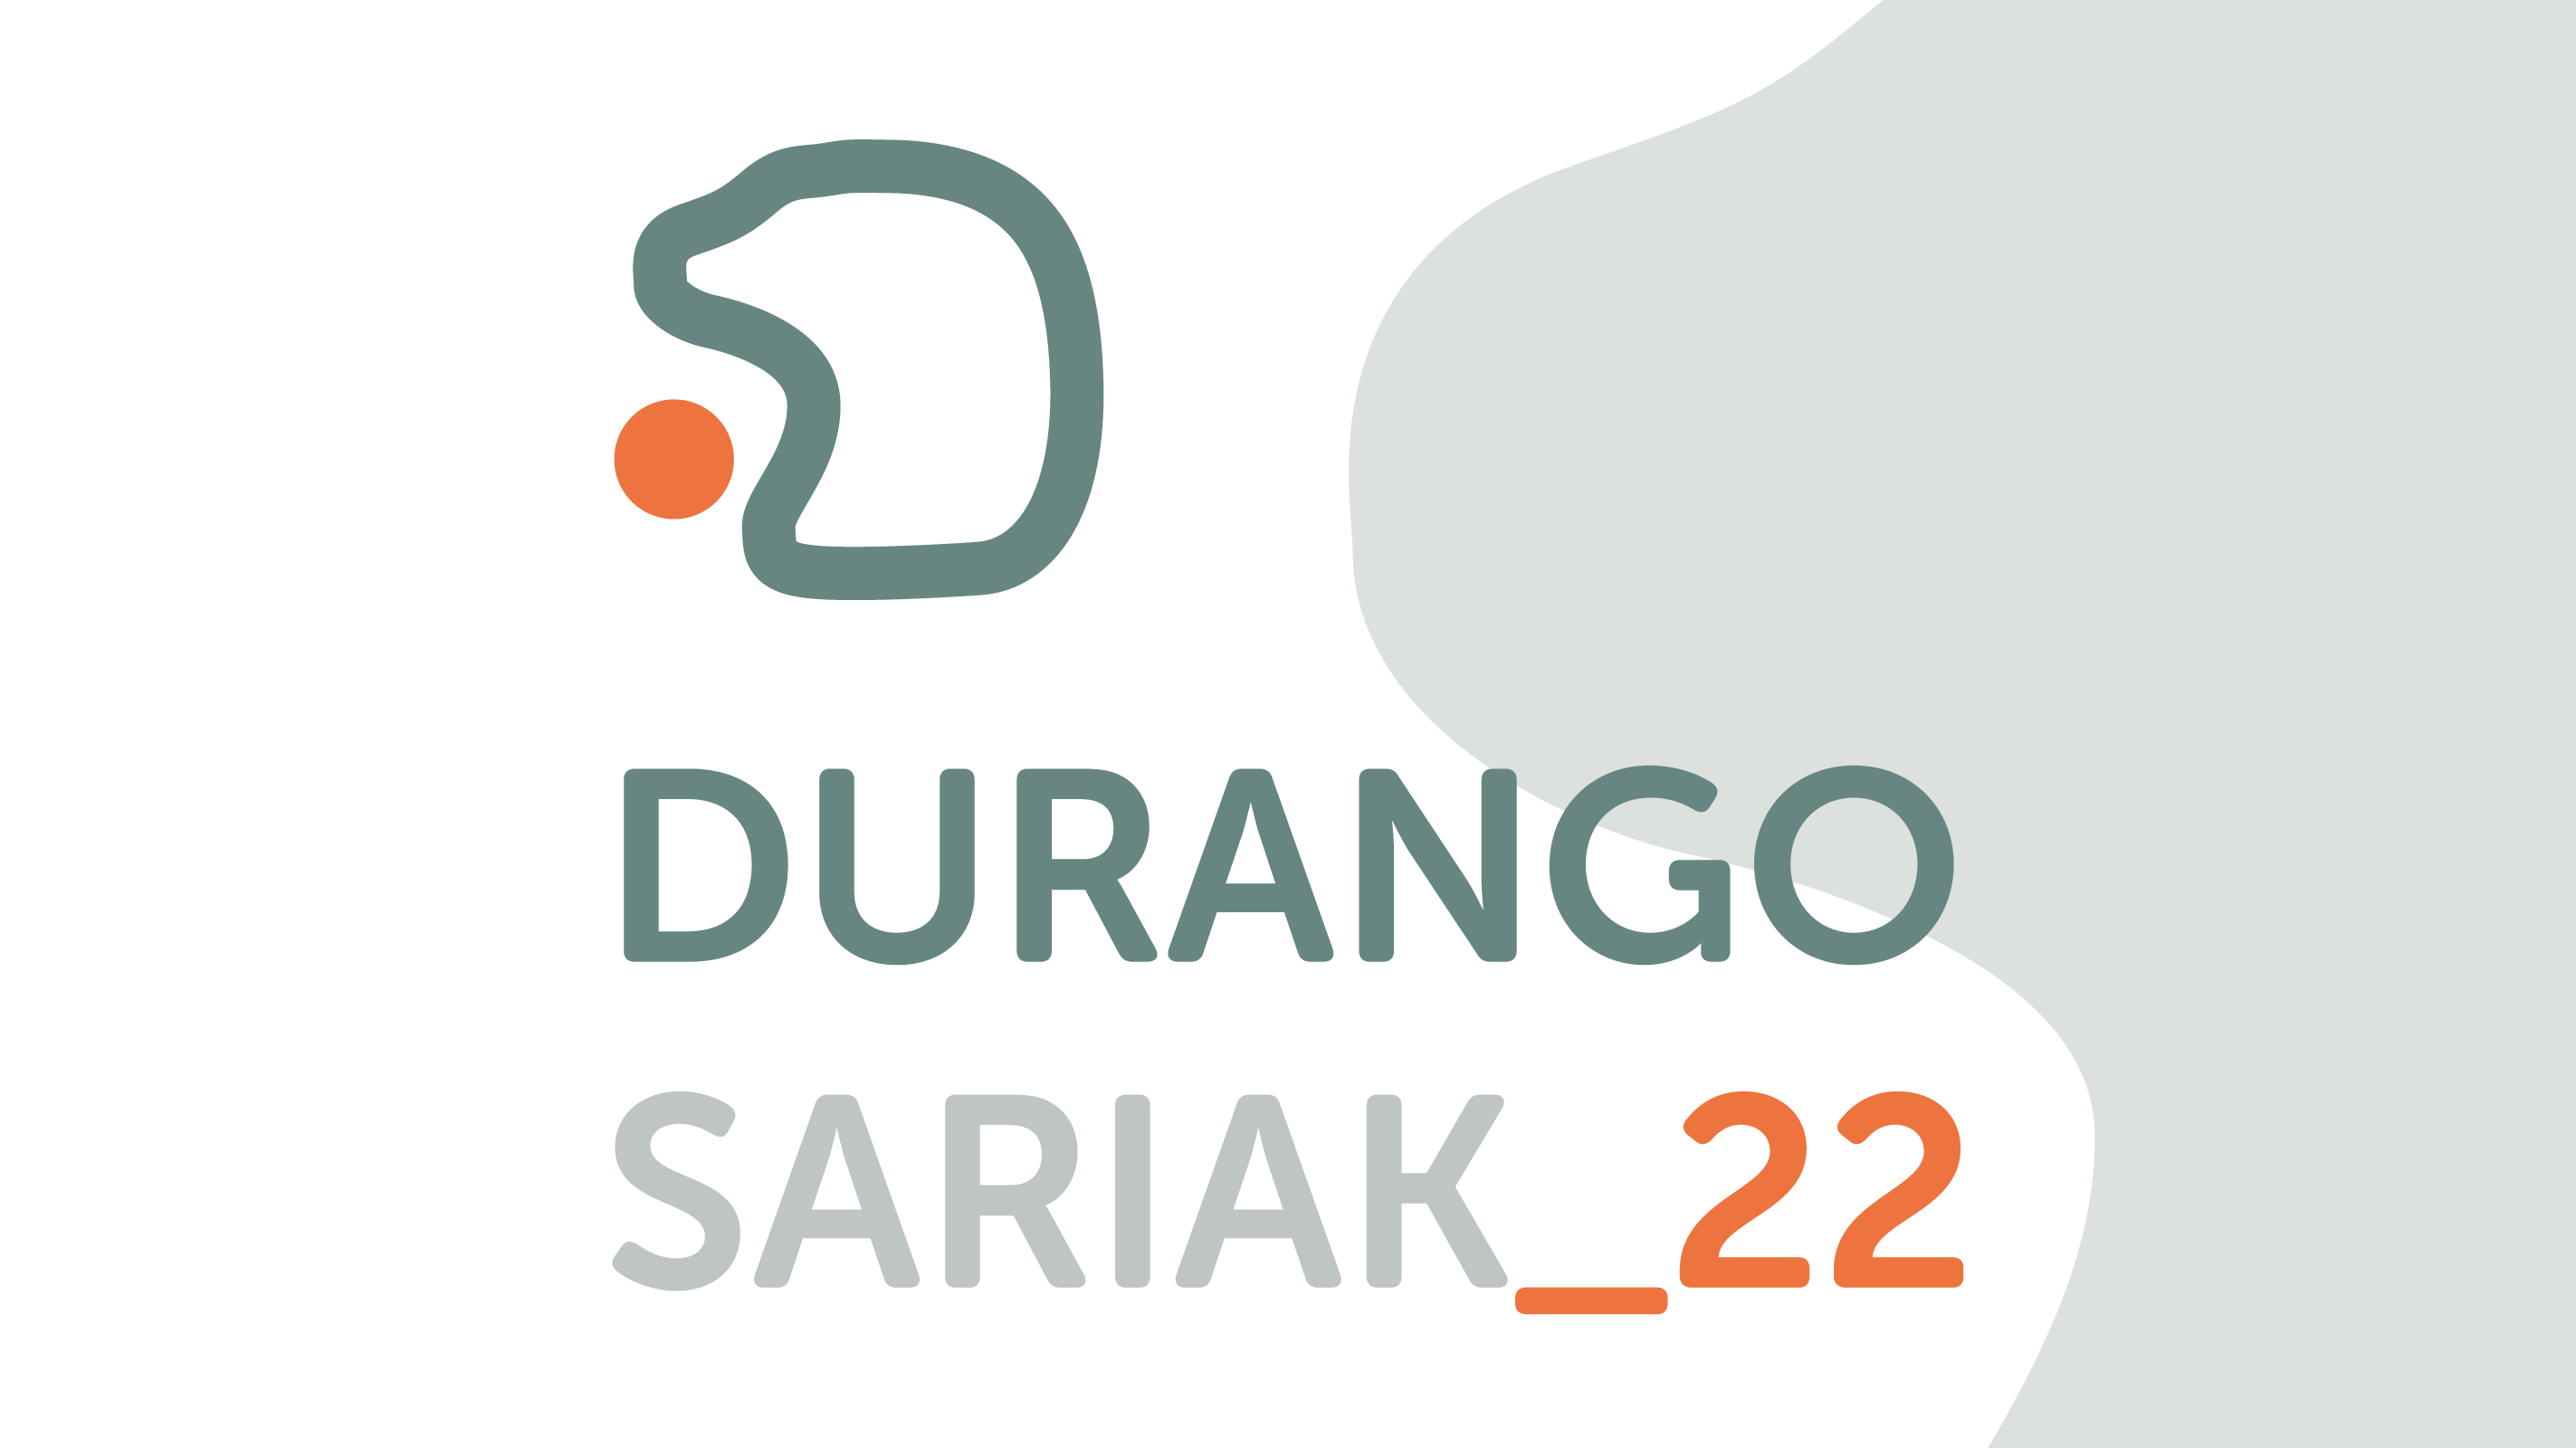 Imagen Durango Sariak 2022 - Votación